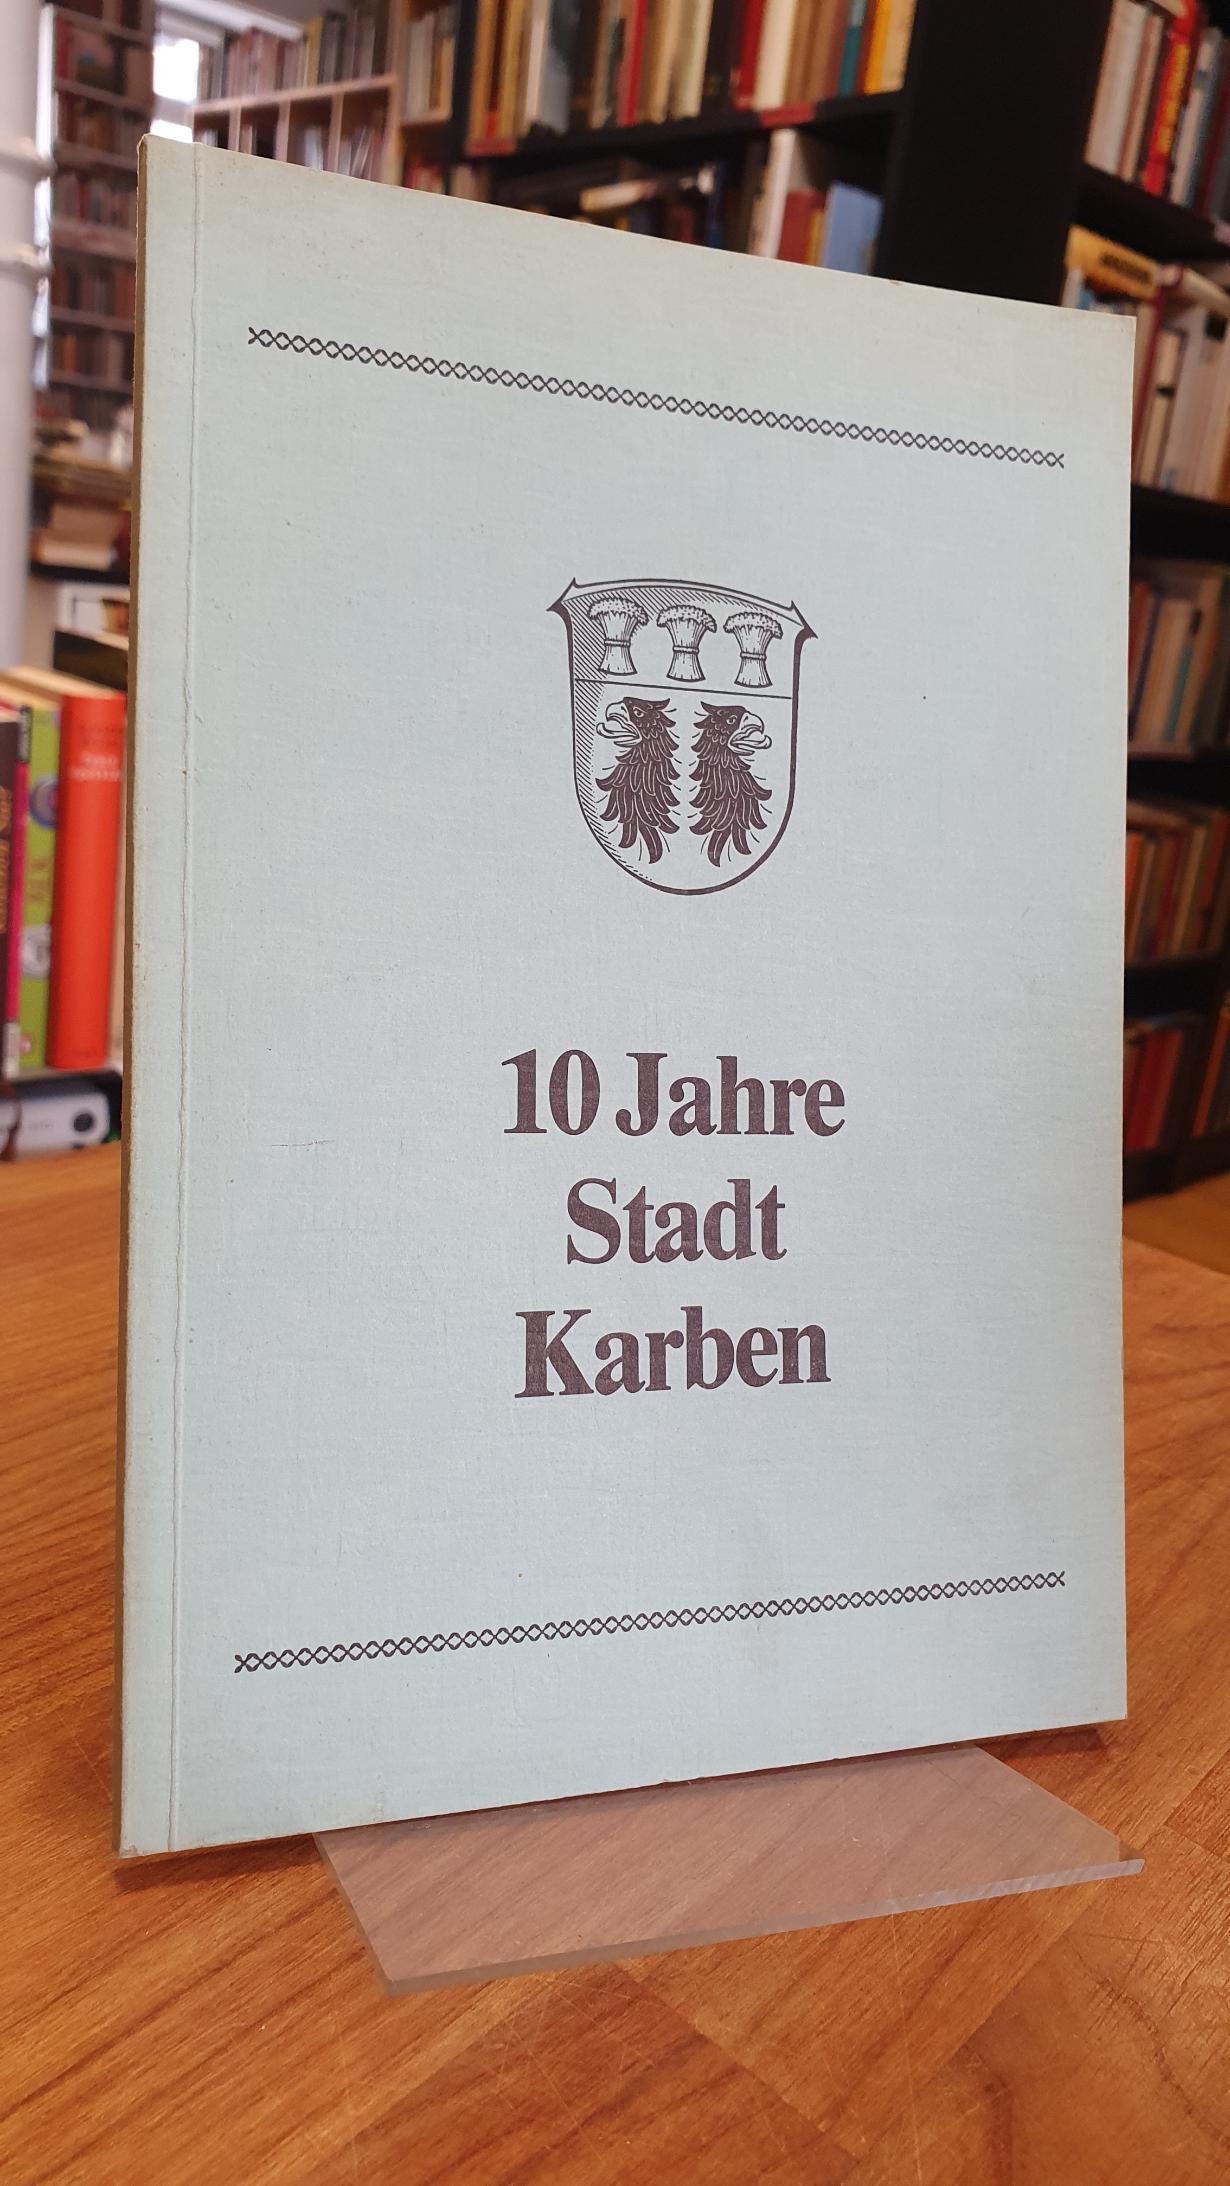 Historische Kommission der Stadt Karben, 10 Jahre Stadt Karben – Beiträge zur Ge